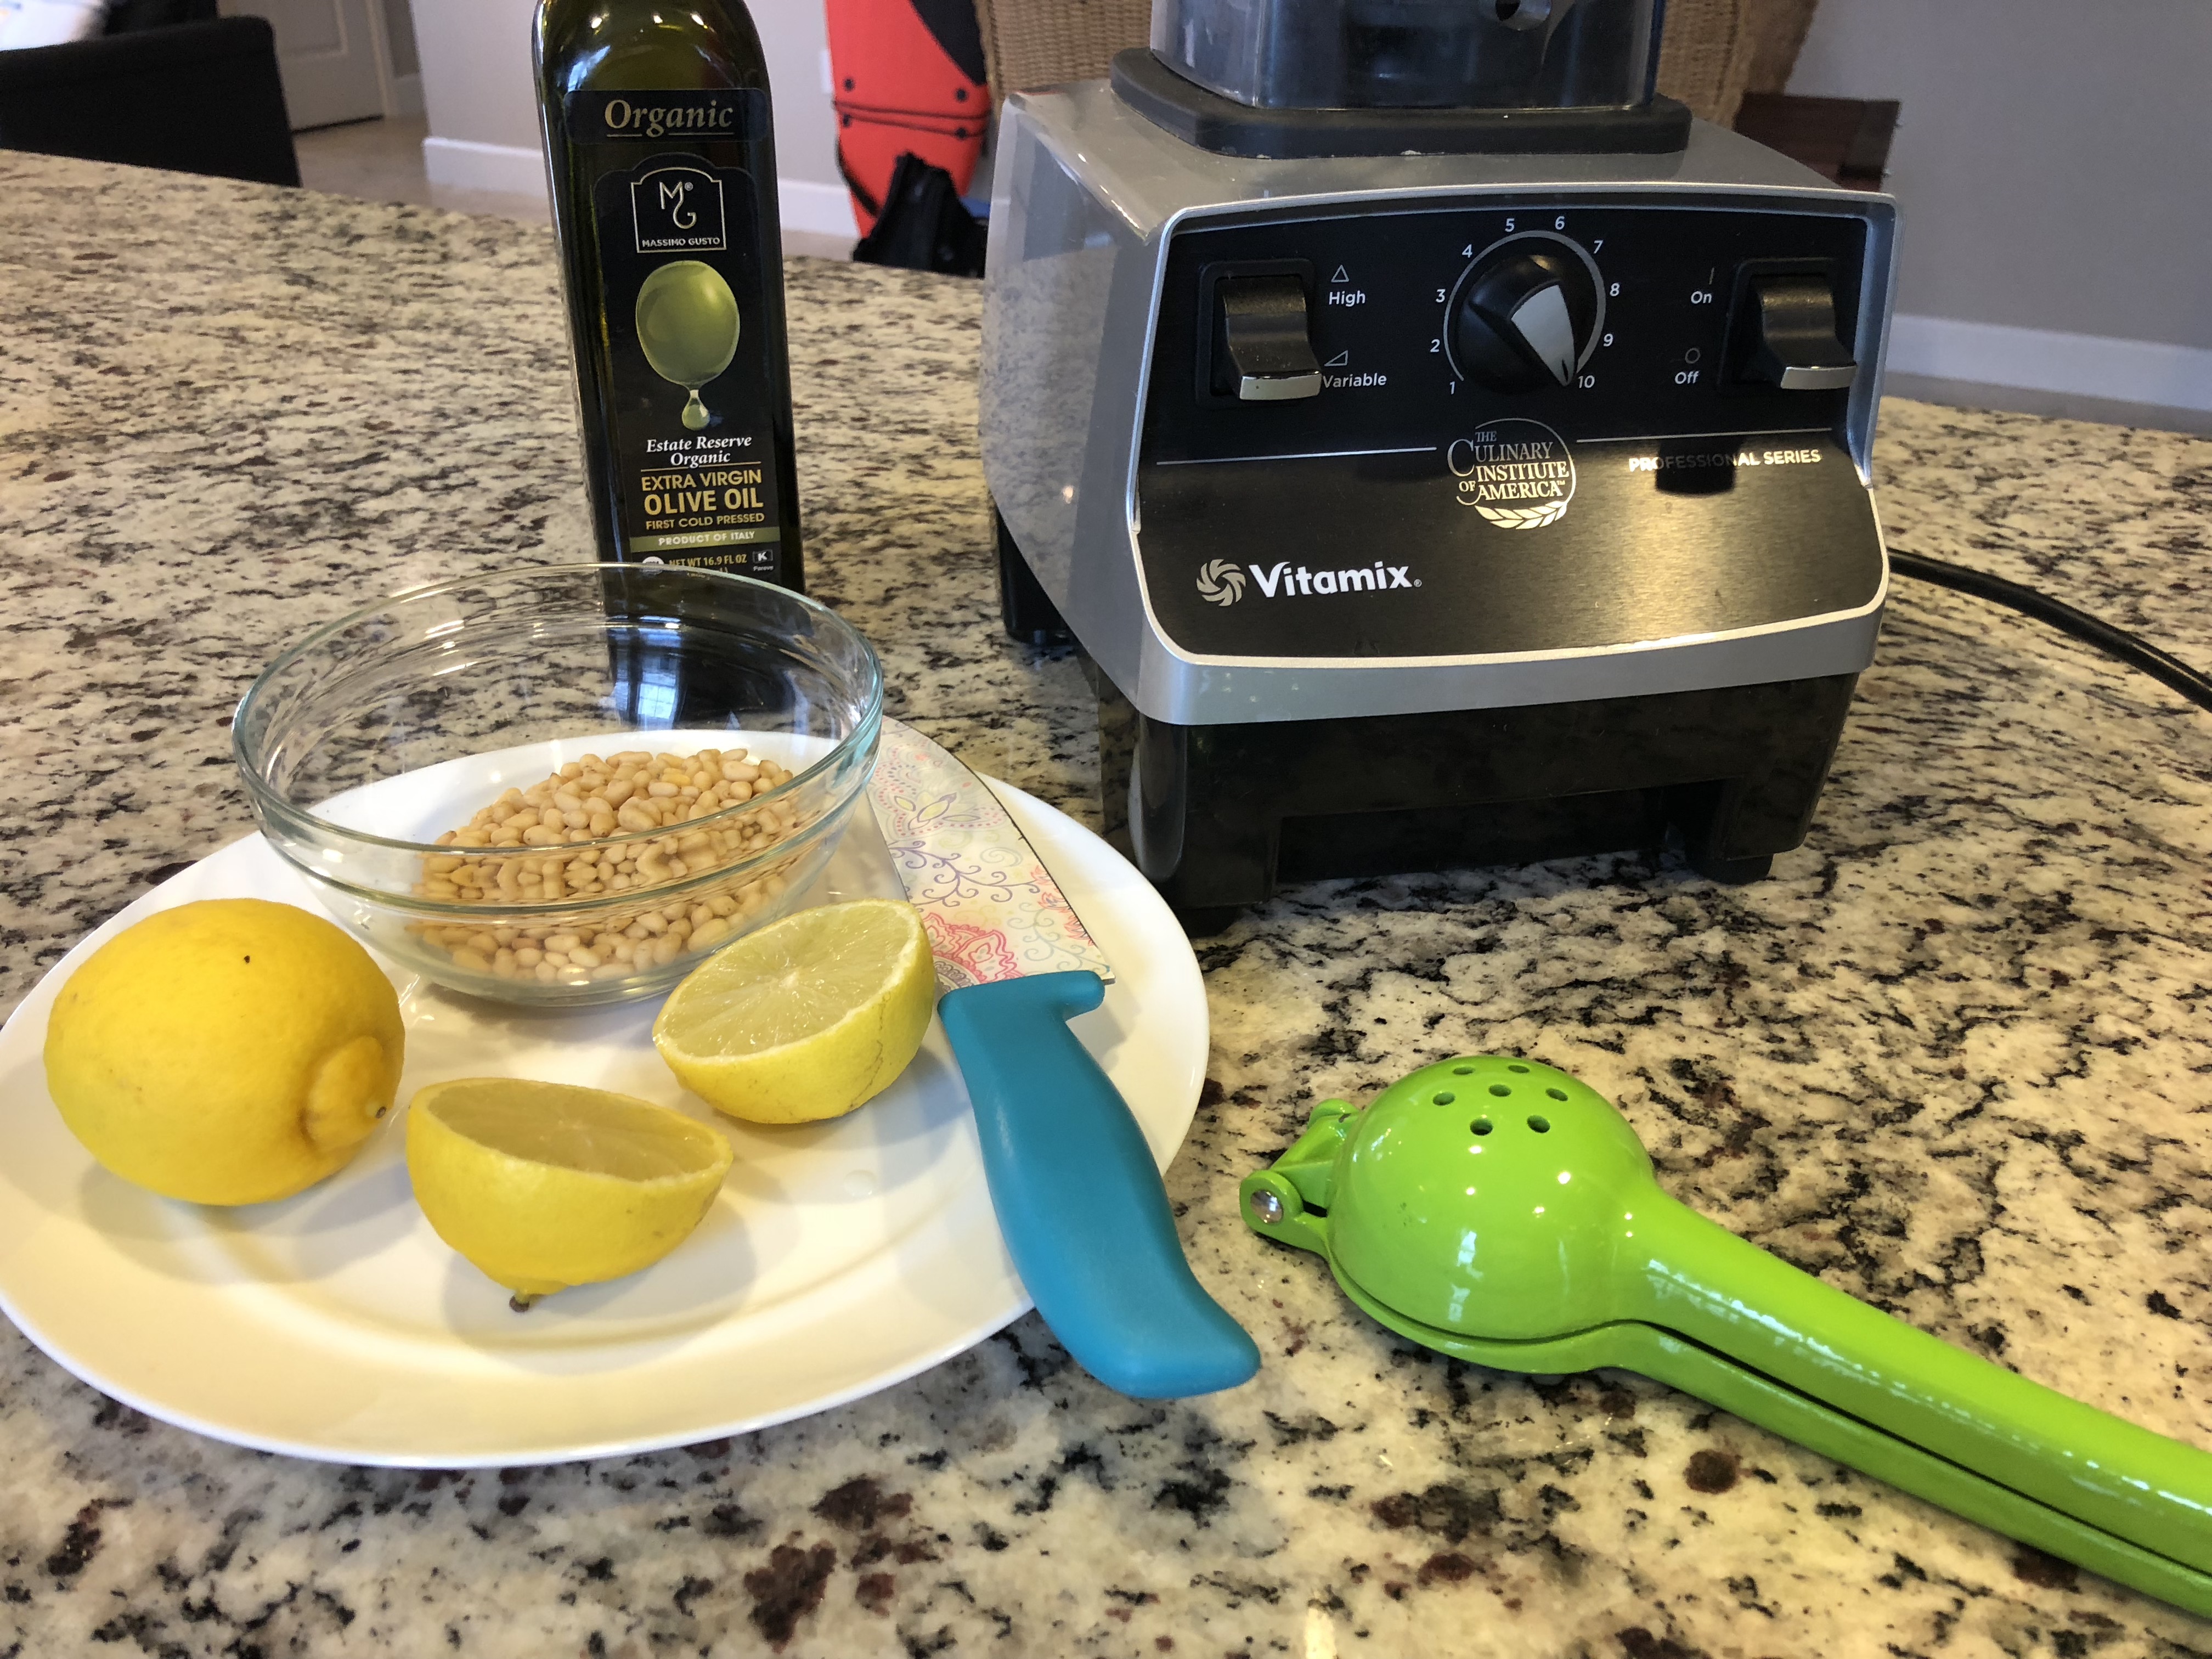 Lemon, pine nuts, olive oil, vitamix